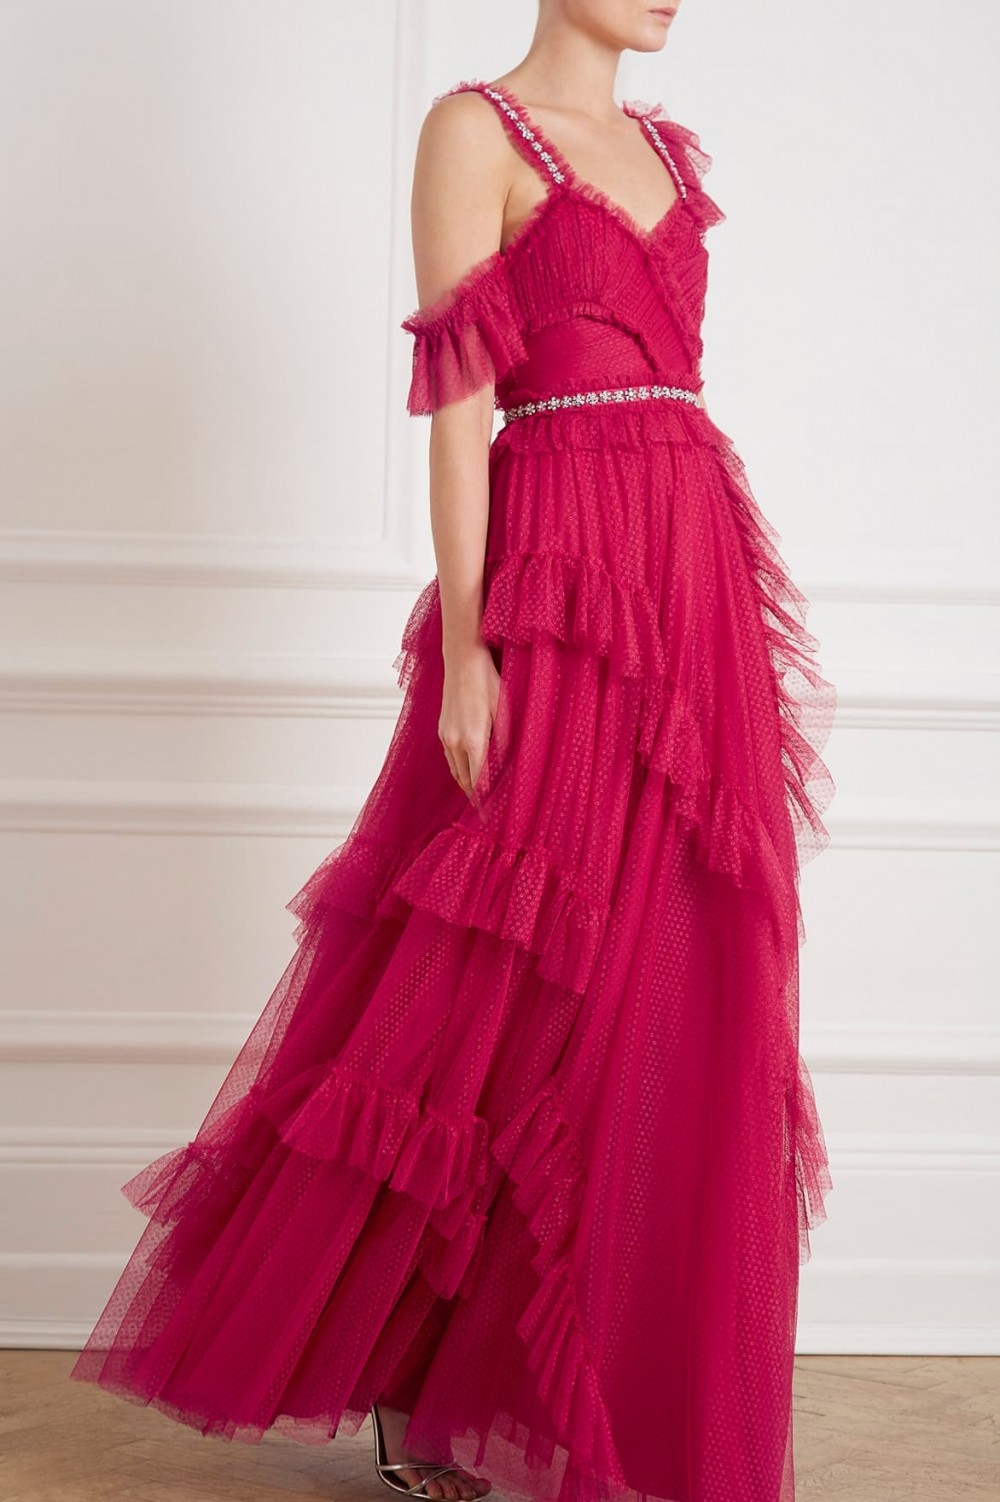 Degas fuscia pink gown